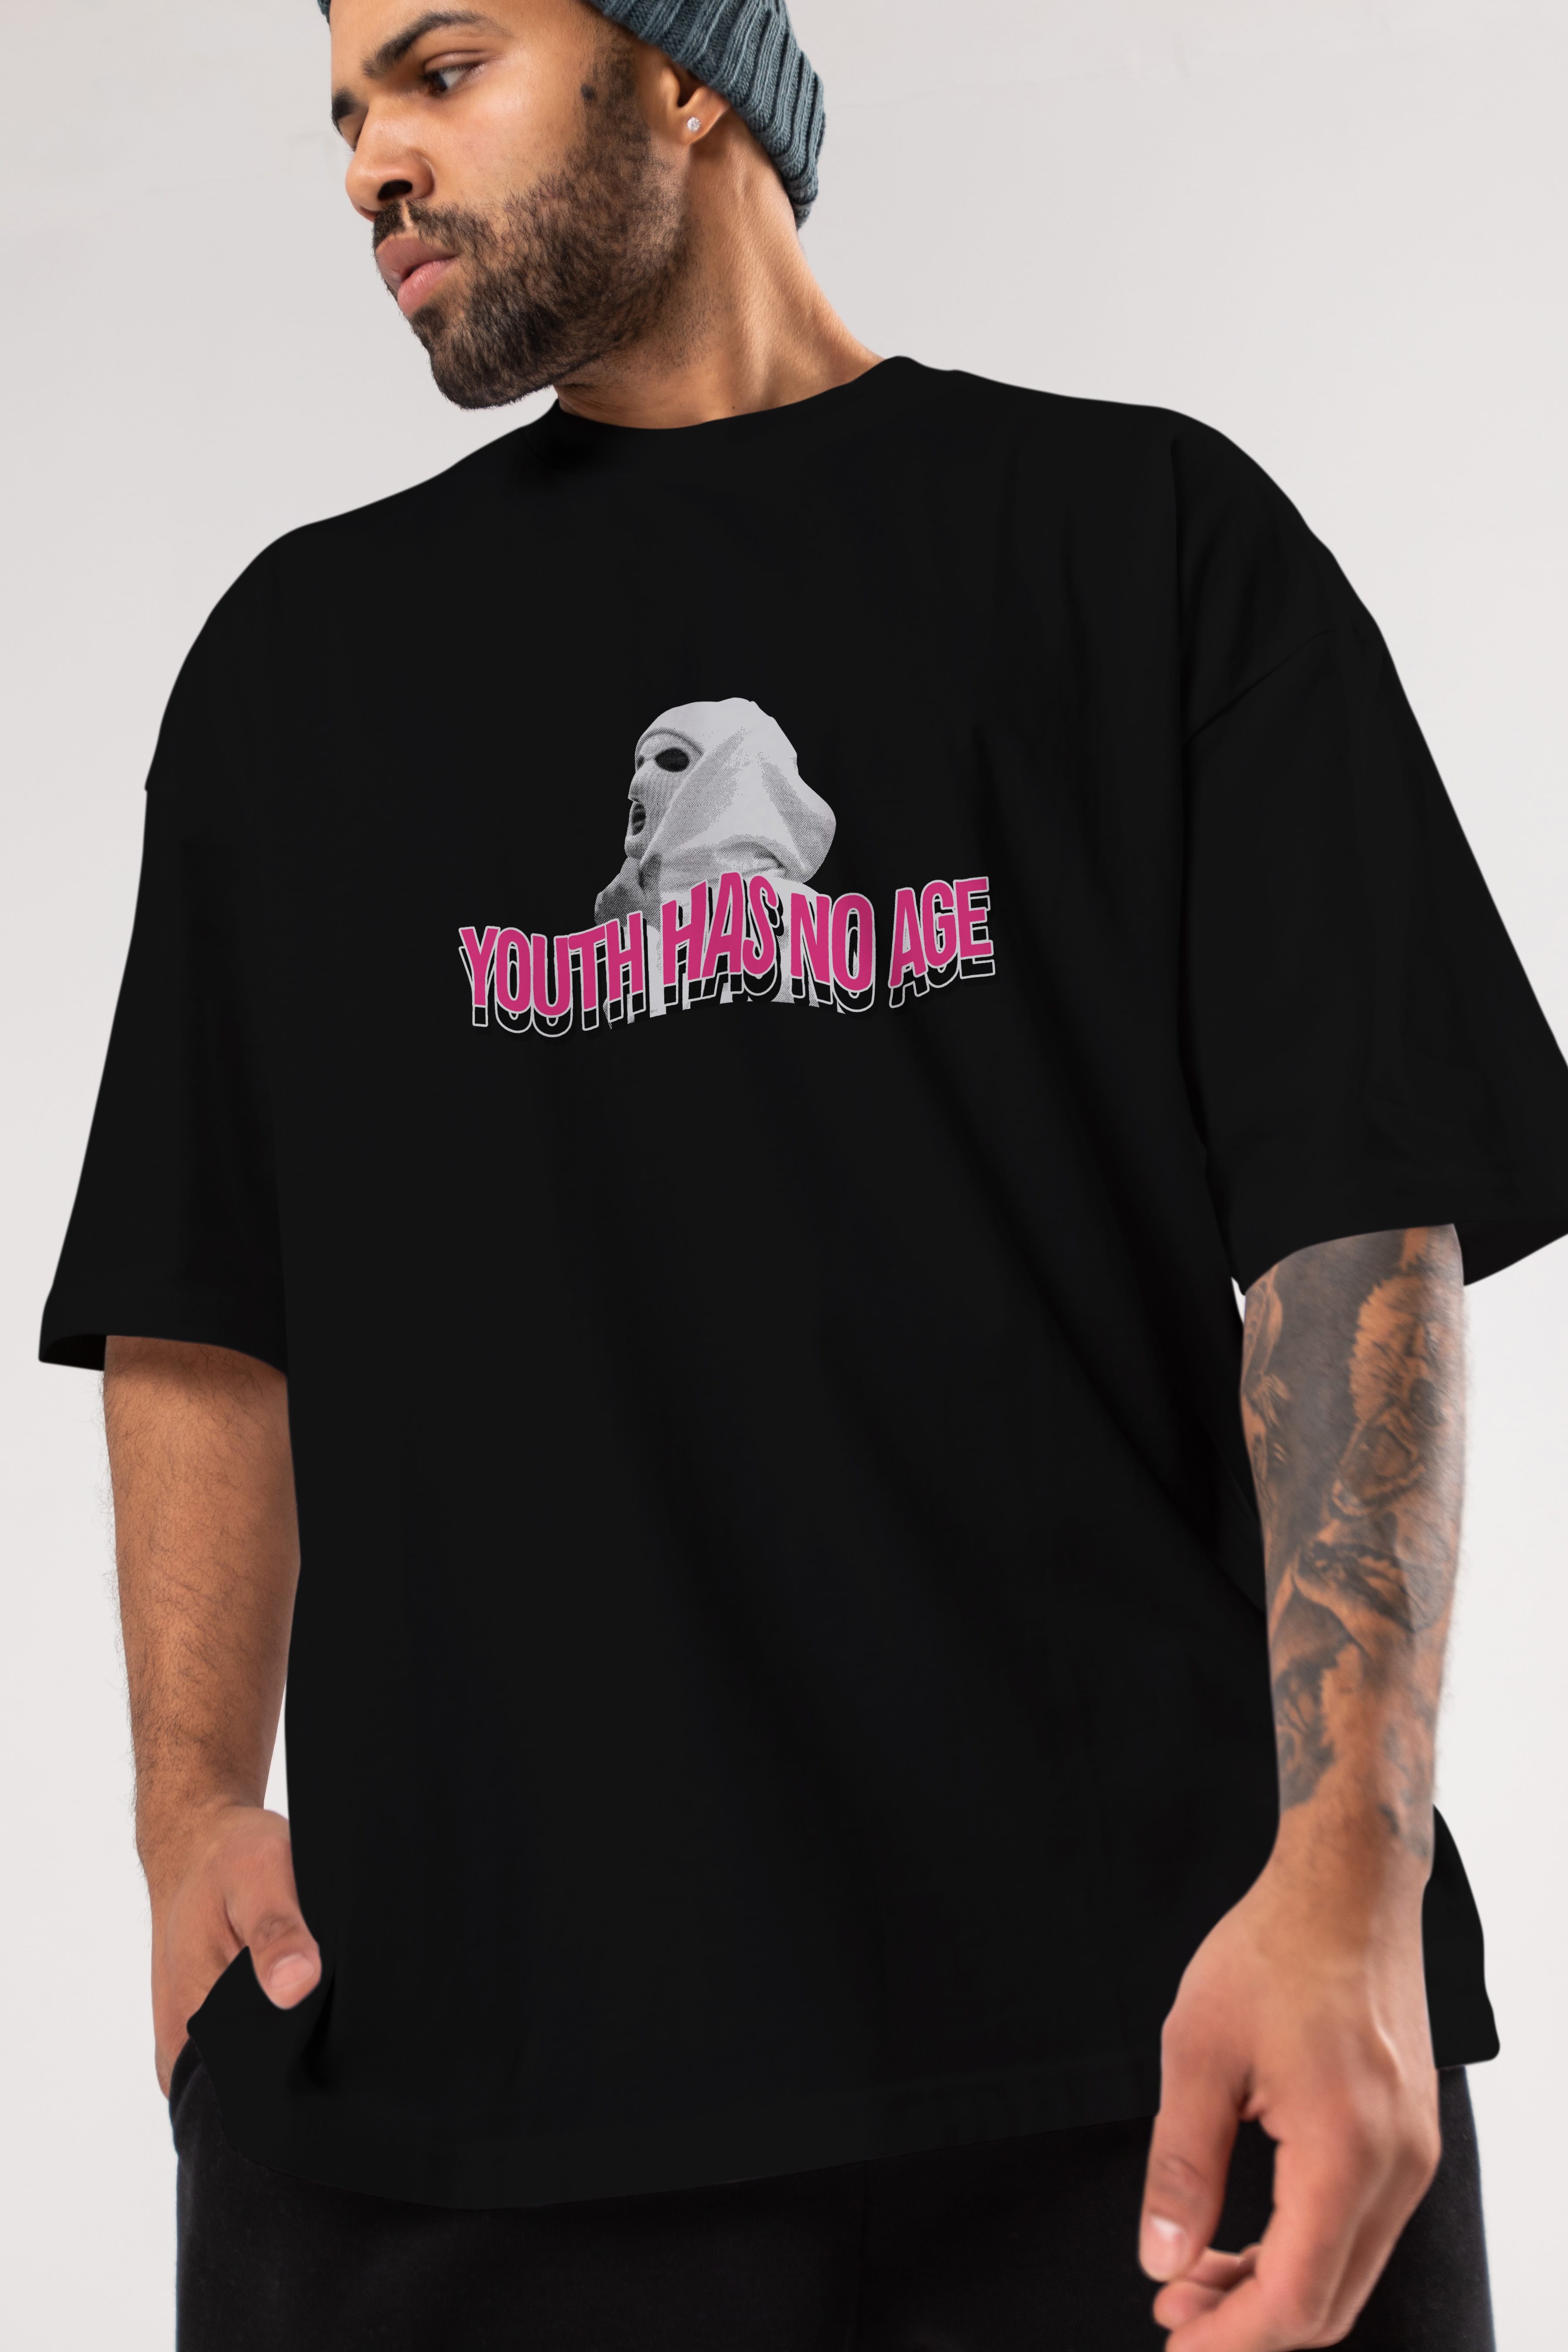 Youth Has No Age Ön Baskılı Oversize t-shirt Erkek Kadın Unisex